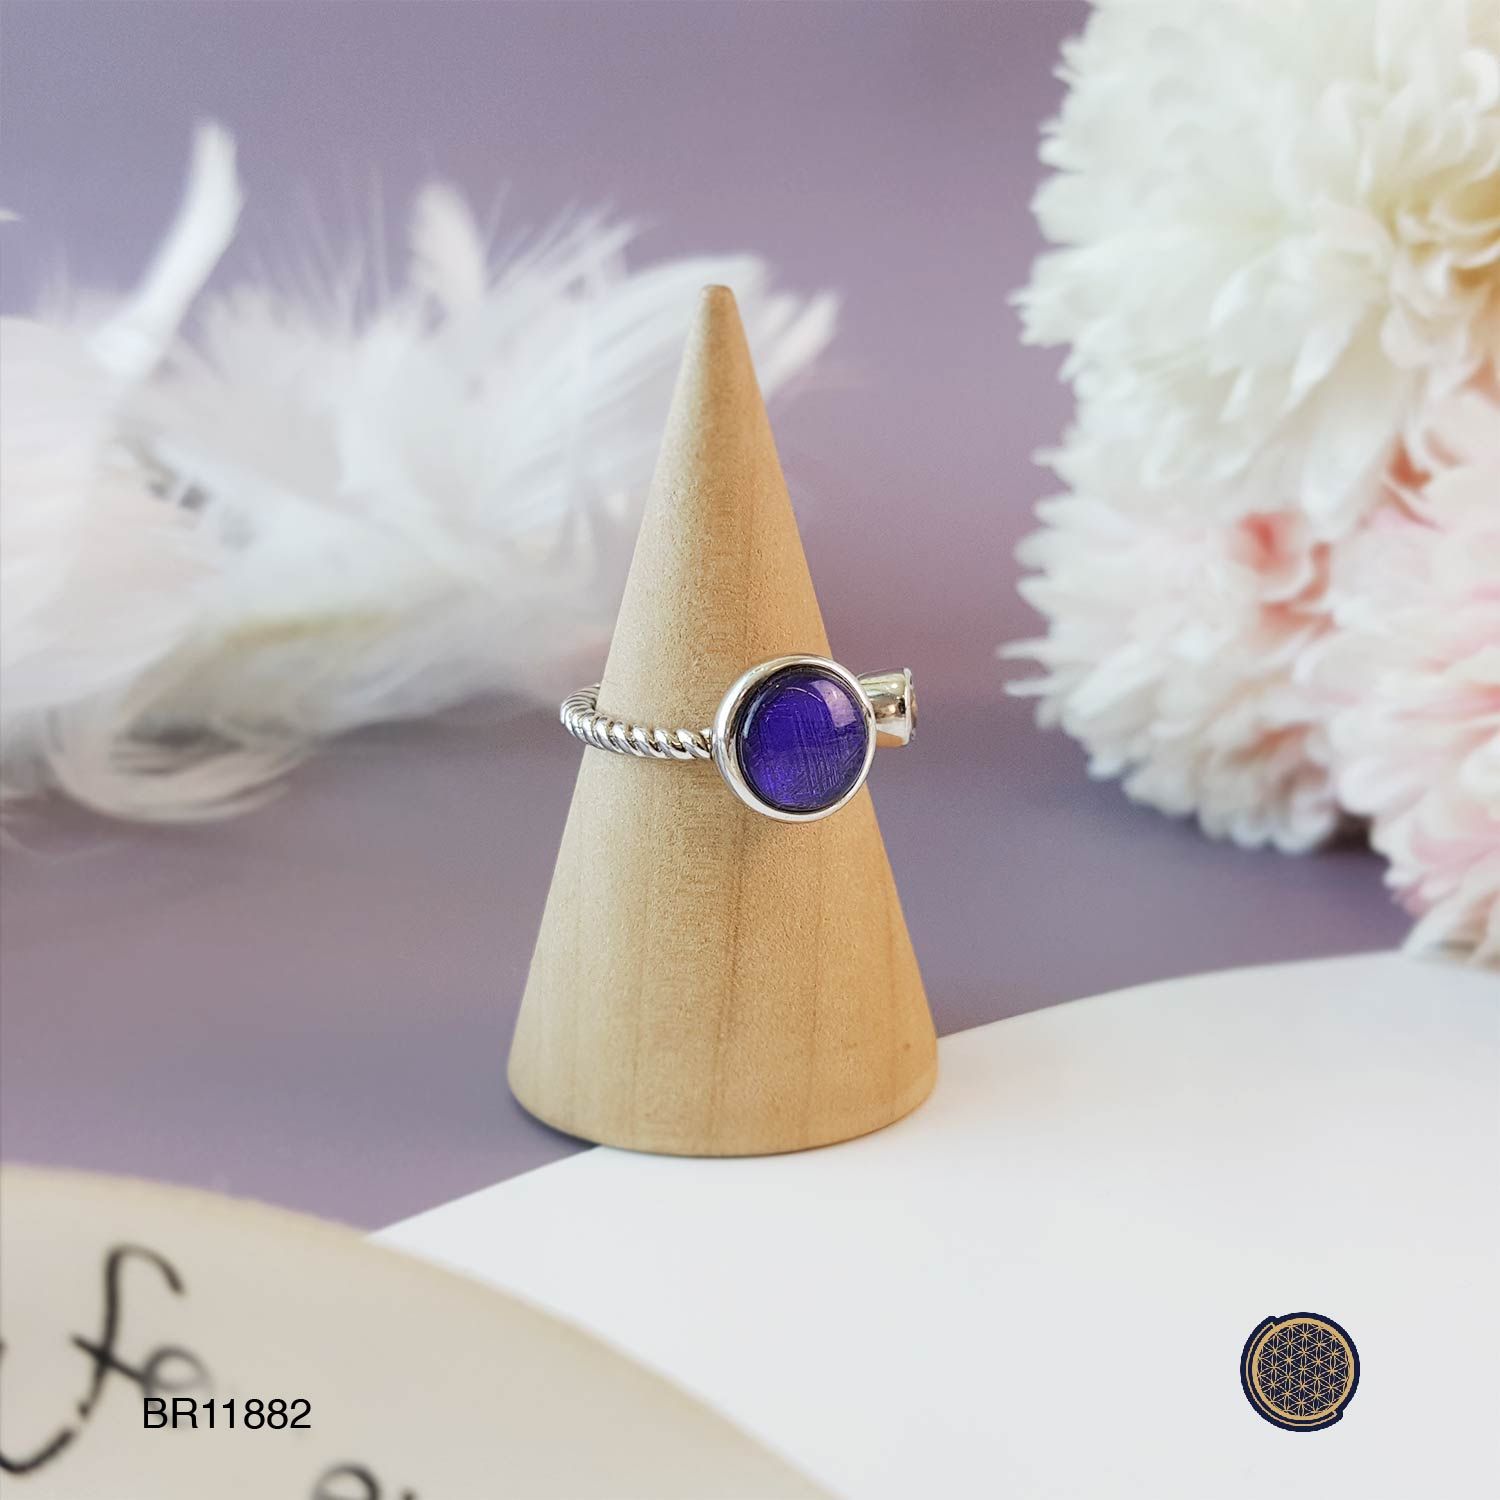 8mm 天铁圆形搭配白水晶-紫色戒指